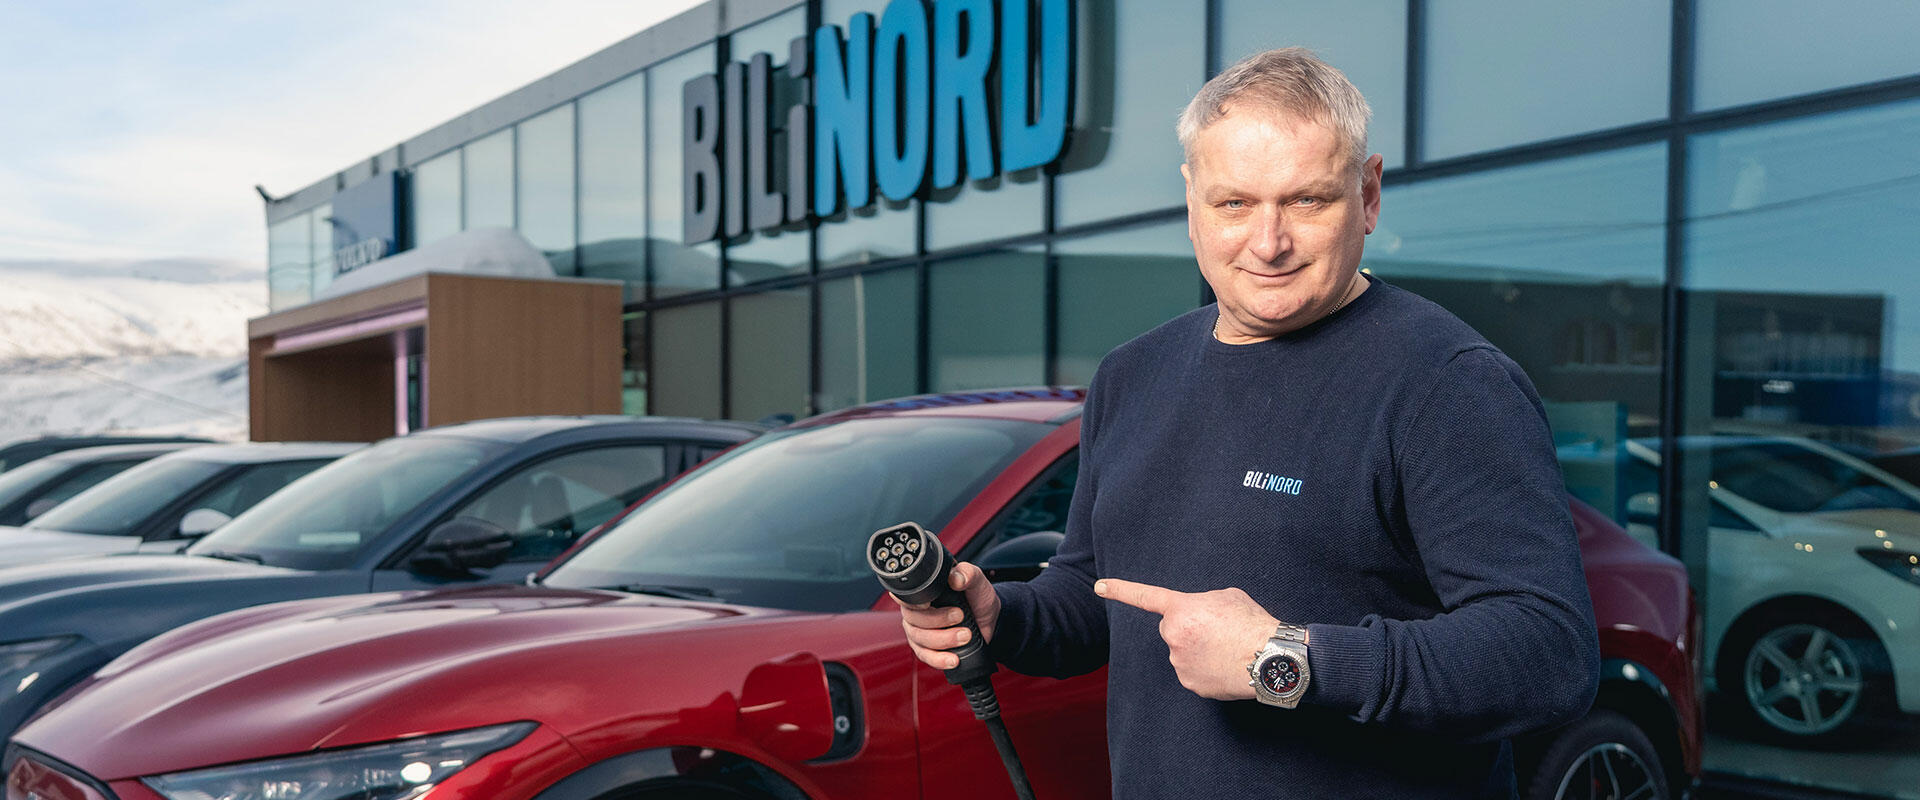 Roar Jensen, Ford-selger hos Bil i Nord Tromsø, opplever at stadig flere kunder nå vil ha elbil.